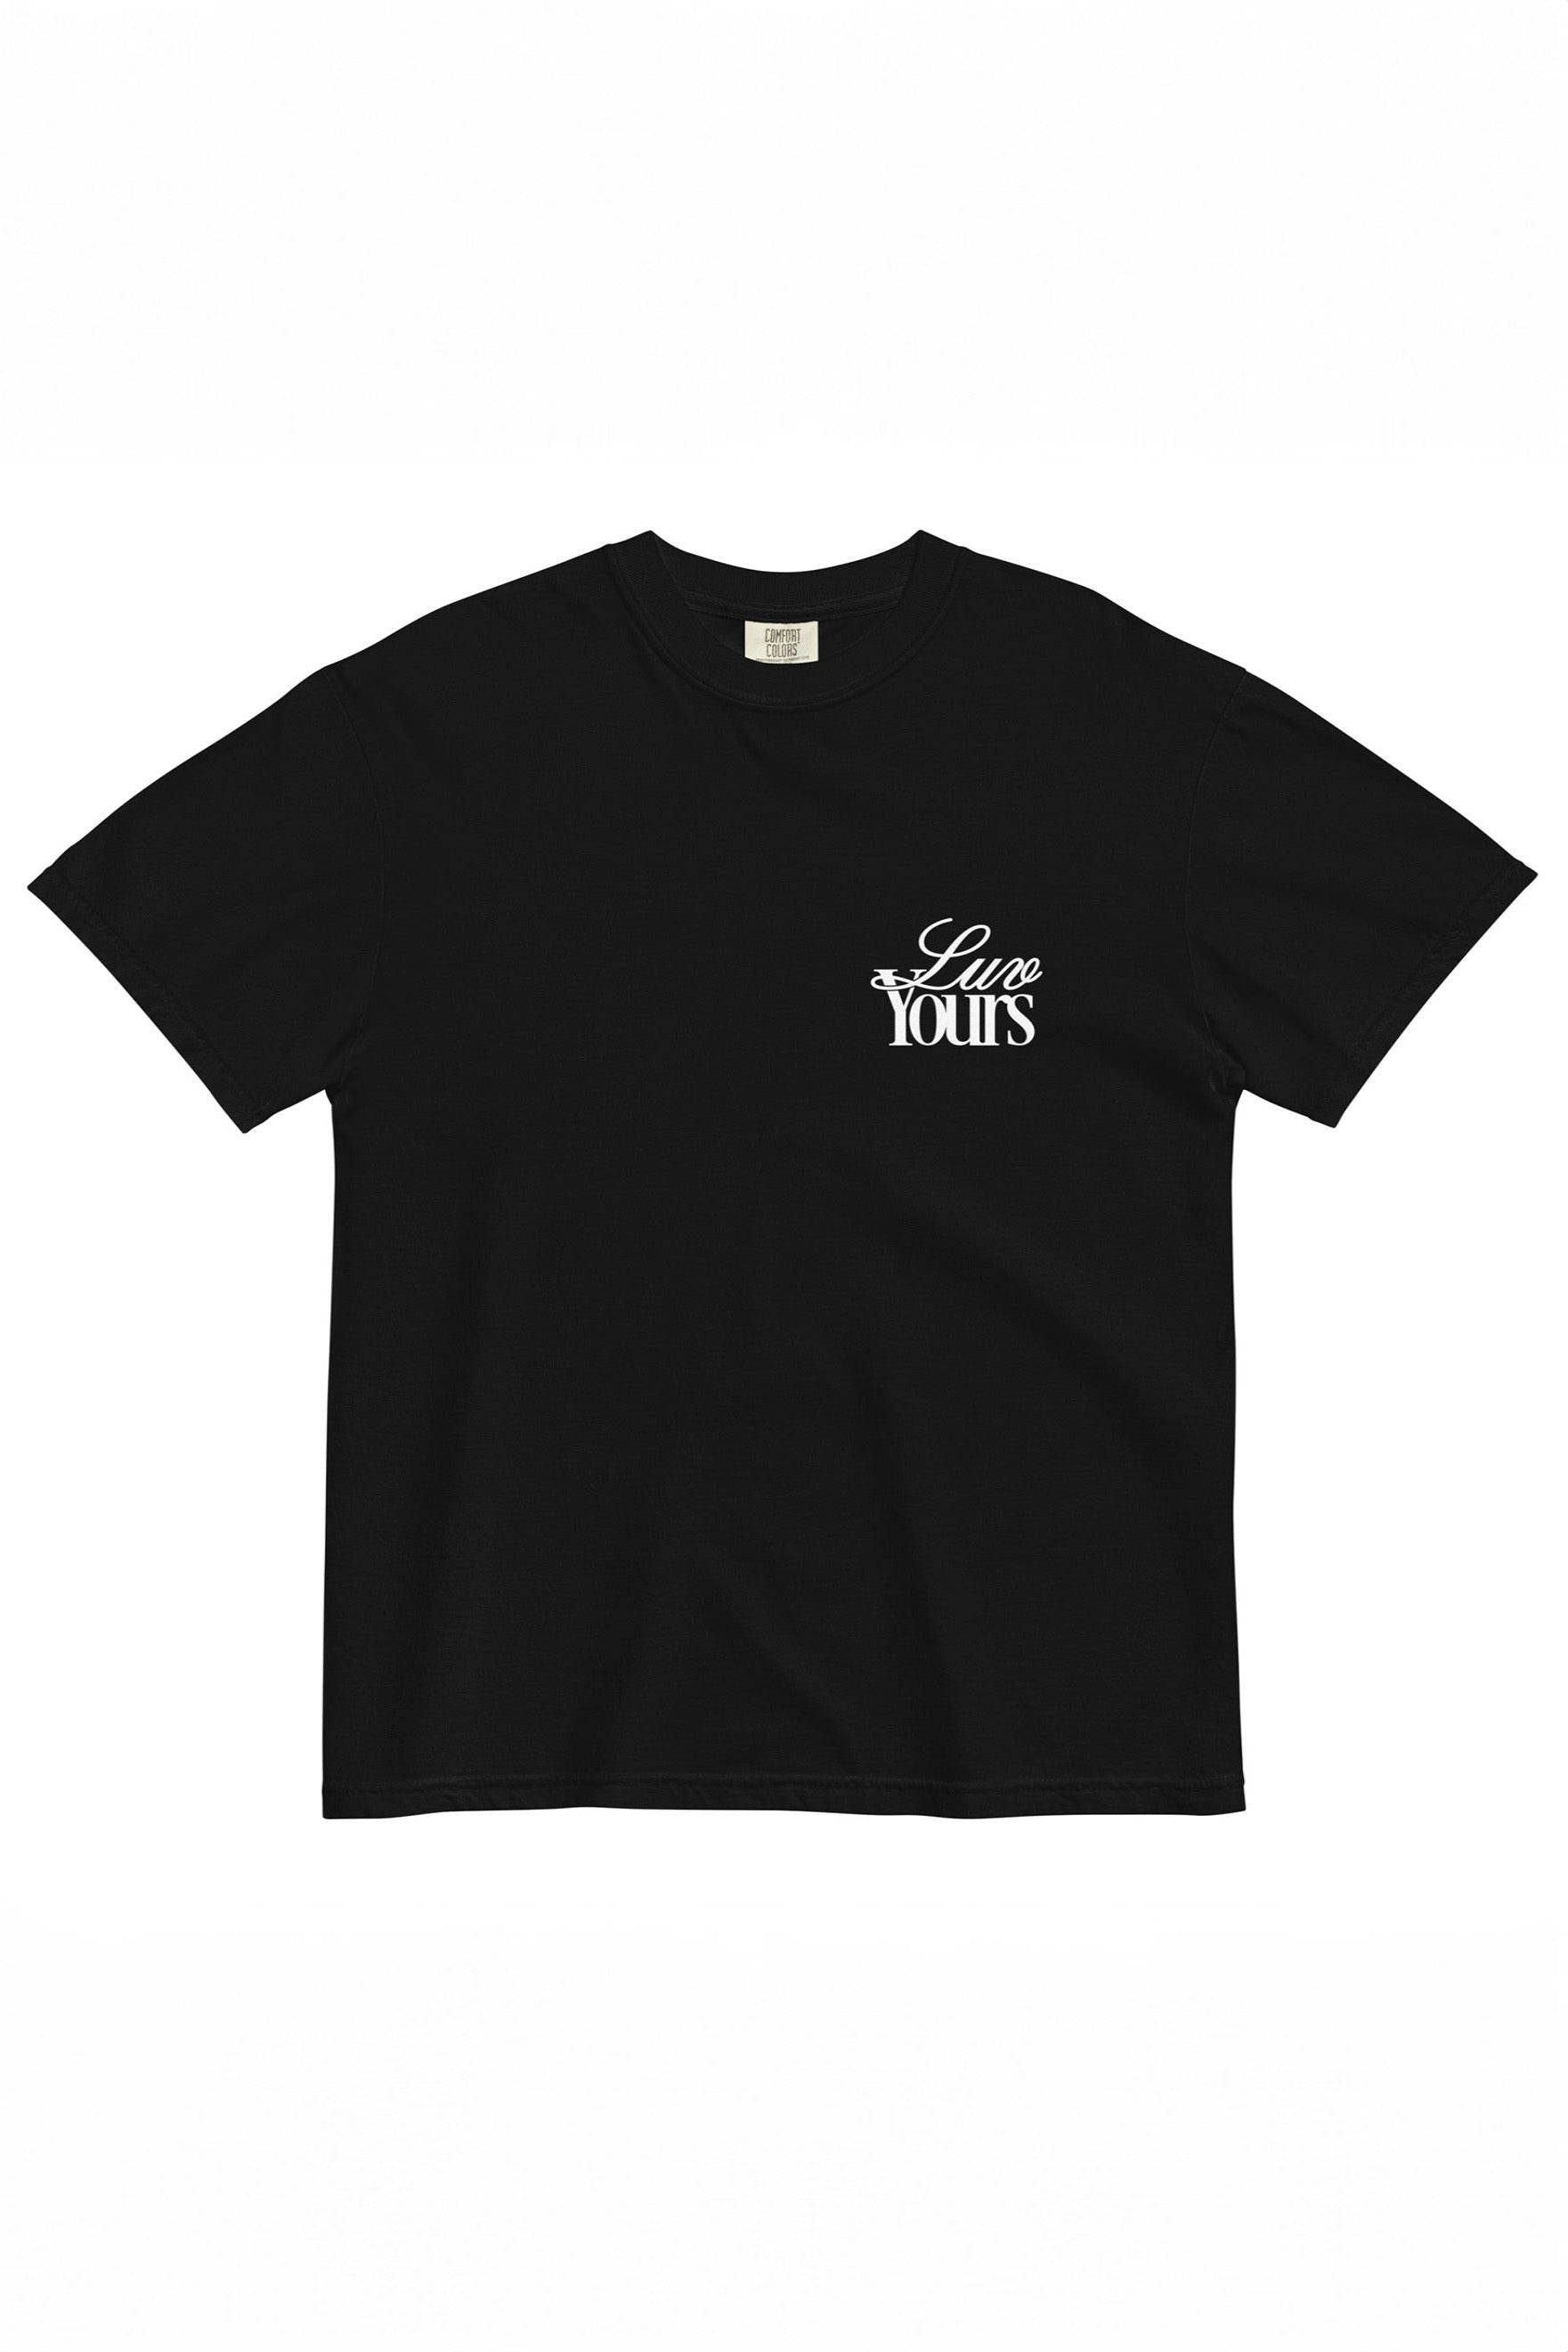 New York Penn x Brooklyn Cloth: Luv Yours Black T-Shirt